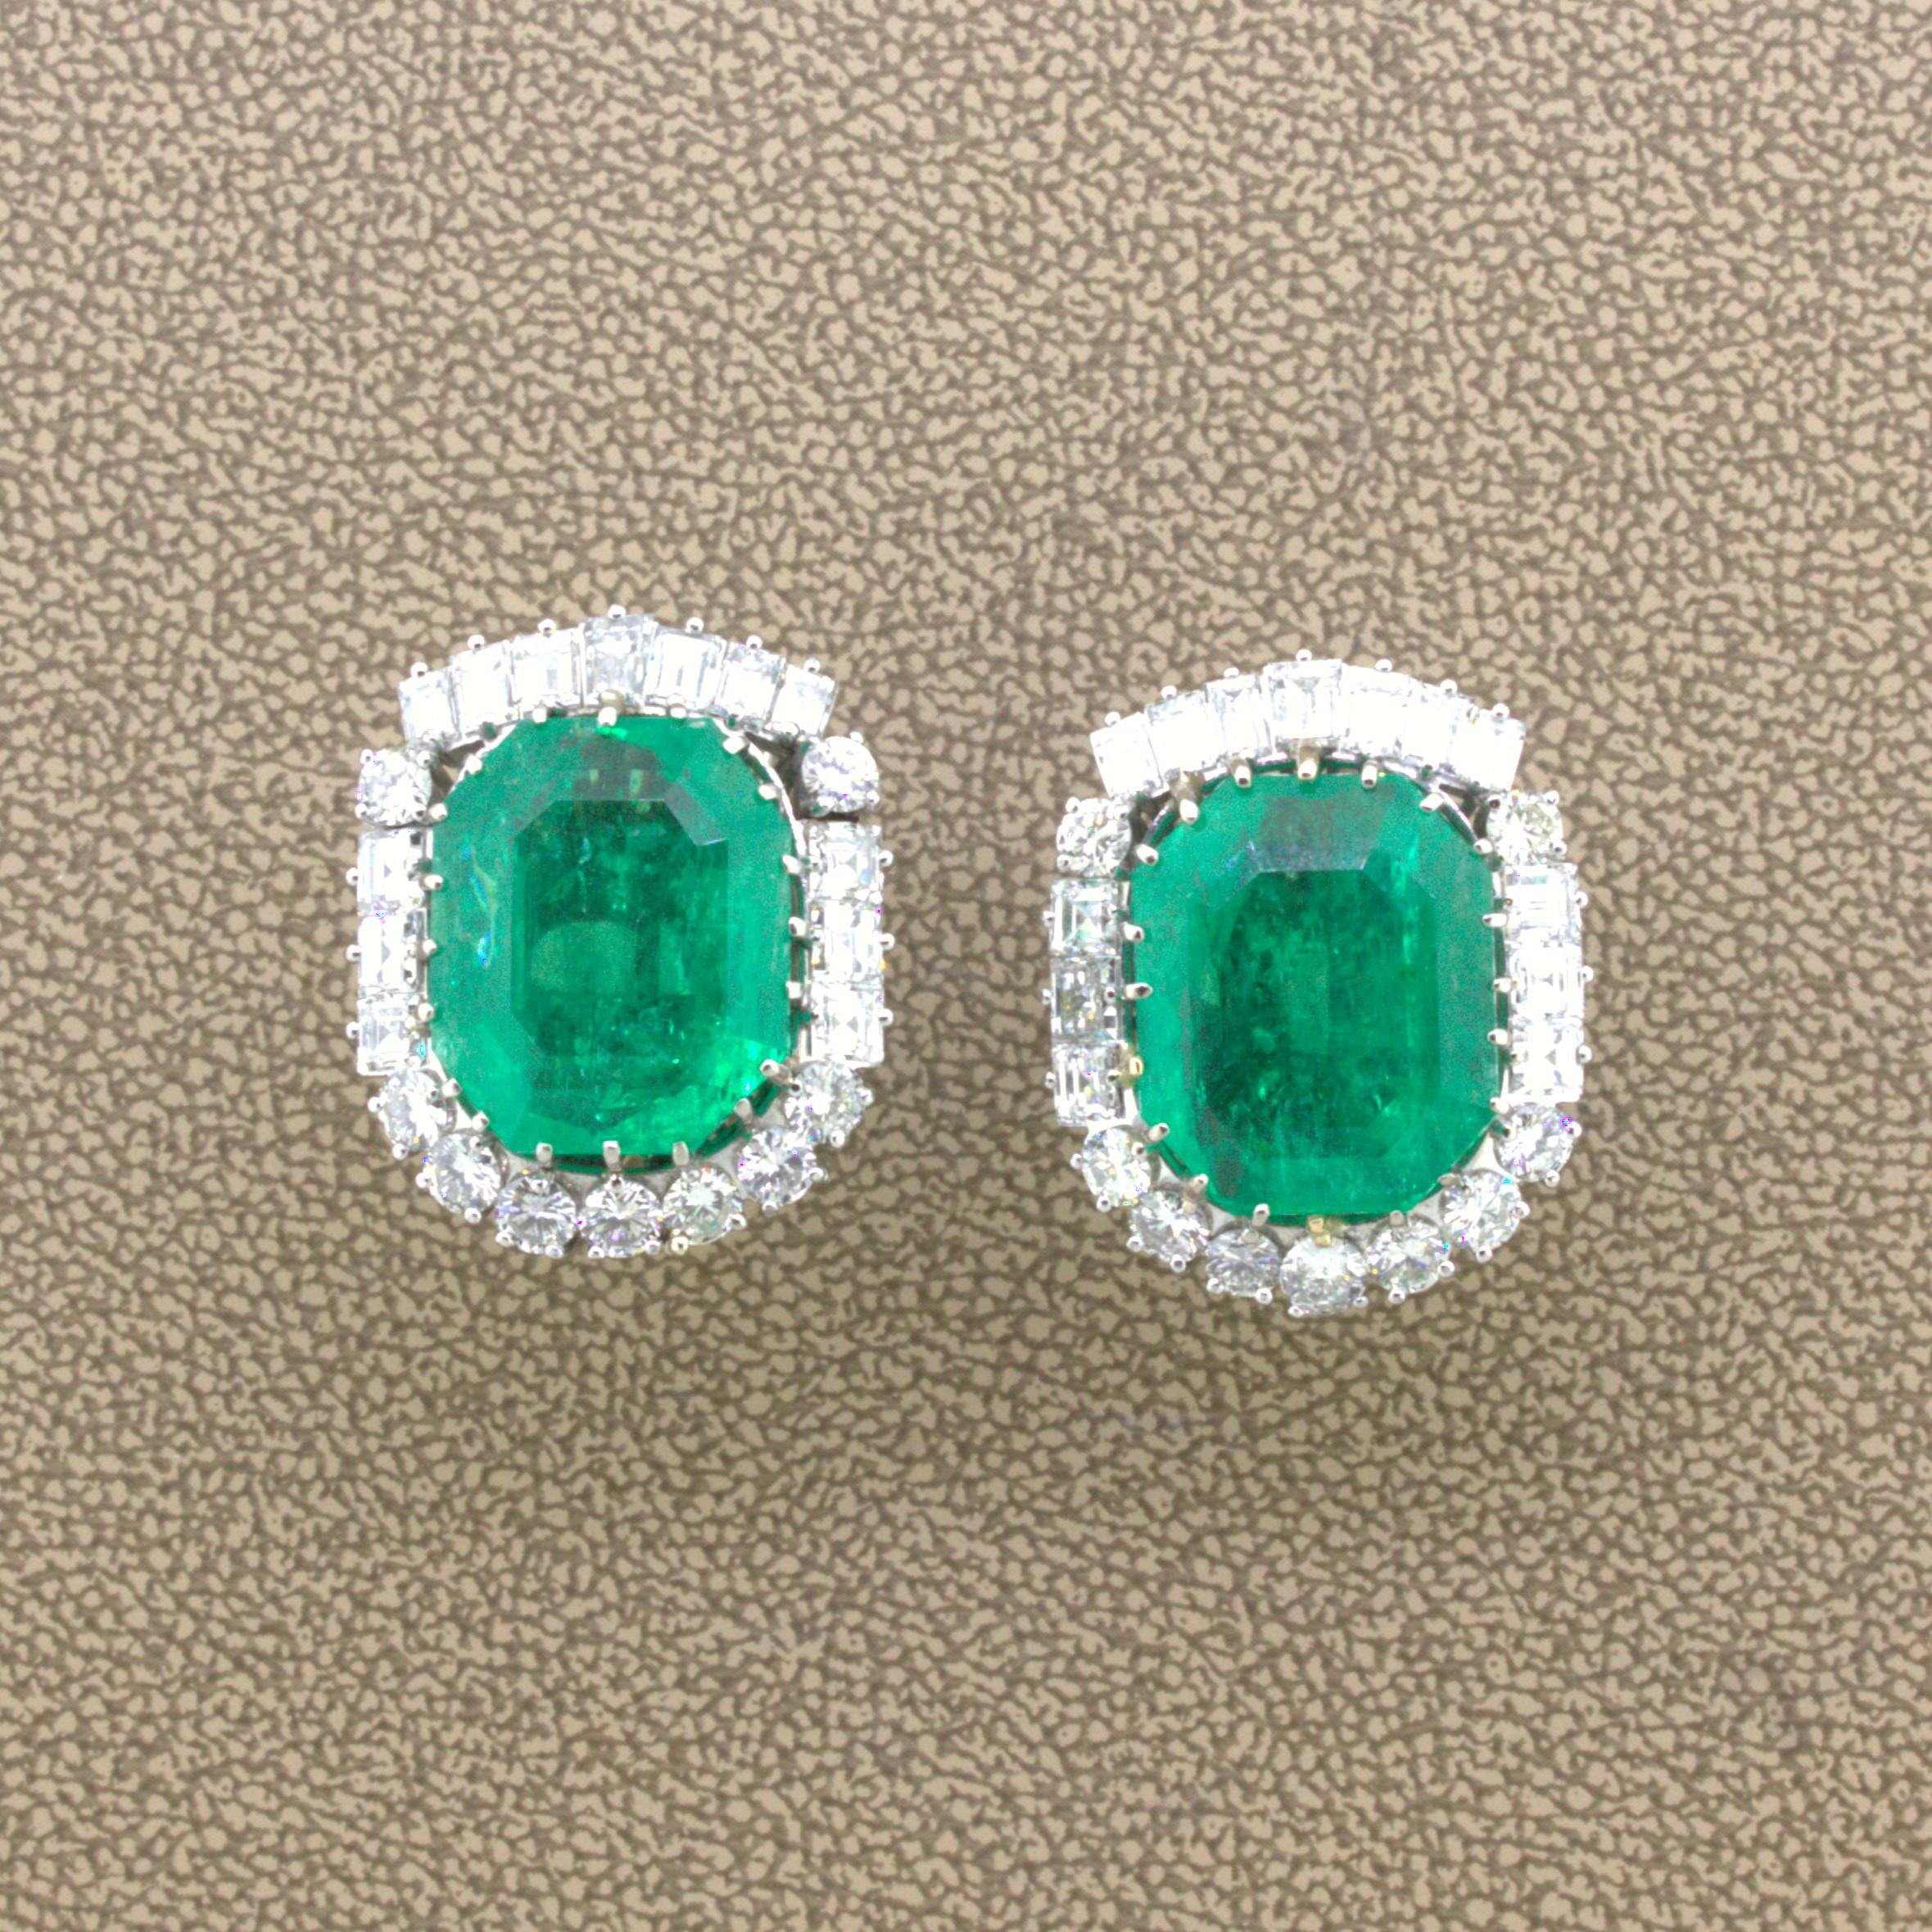 Mid-Century 25,04 Karat kolumbianischer Smaragd Diamant 18K Gold Ohrringe, GIA zertifiziert

Ein sehr beeindruckendes Paar kolumbianischer Smaragd-Ohrringe, bei denen jeder Smaragd über 12 Karat wiegt, insgesamt also 25,04 Karat. Was diese Ohrringe